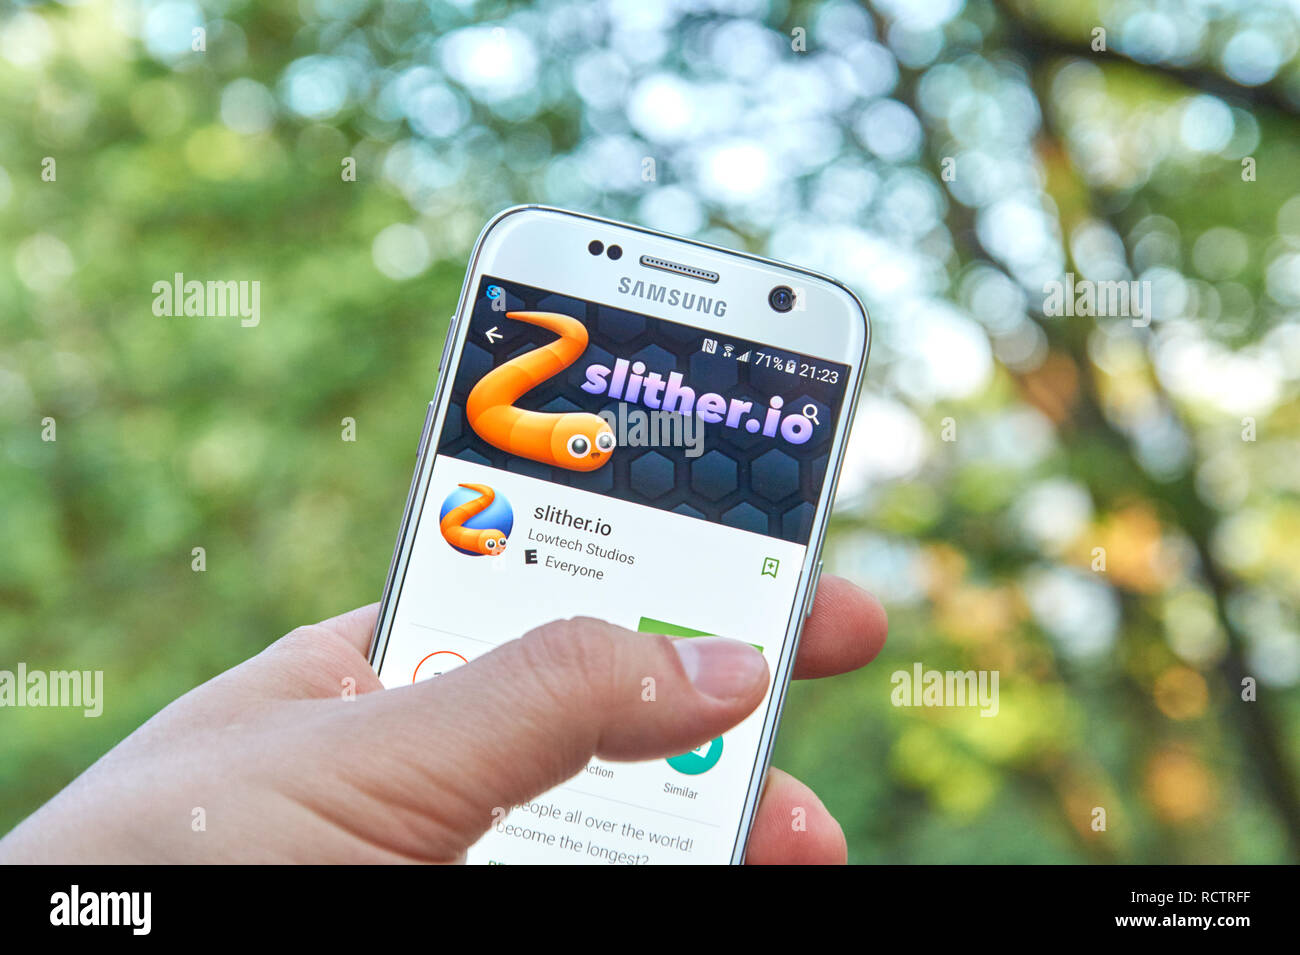 MONTREAL, KANADA - 23. MAI 2016: Slither. io-Spiel auf Samsung S7-Bildschirm. Slither. io ist ein massive multiplayer Browser Spiel entwickelt von Steve Howse. Stockfoto